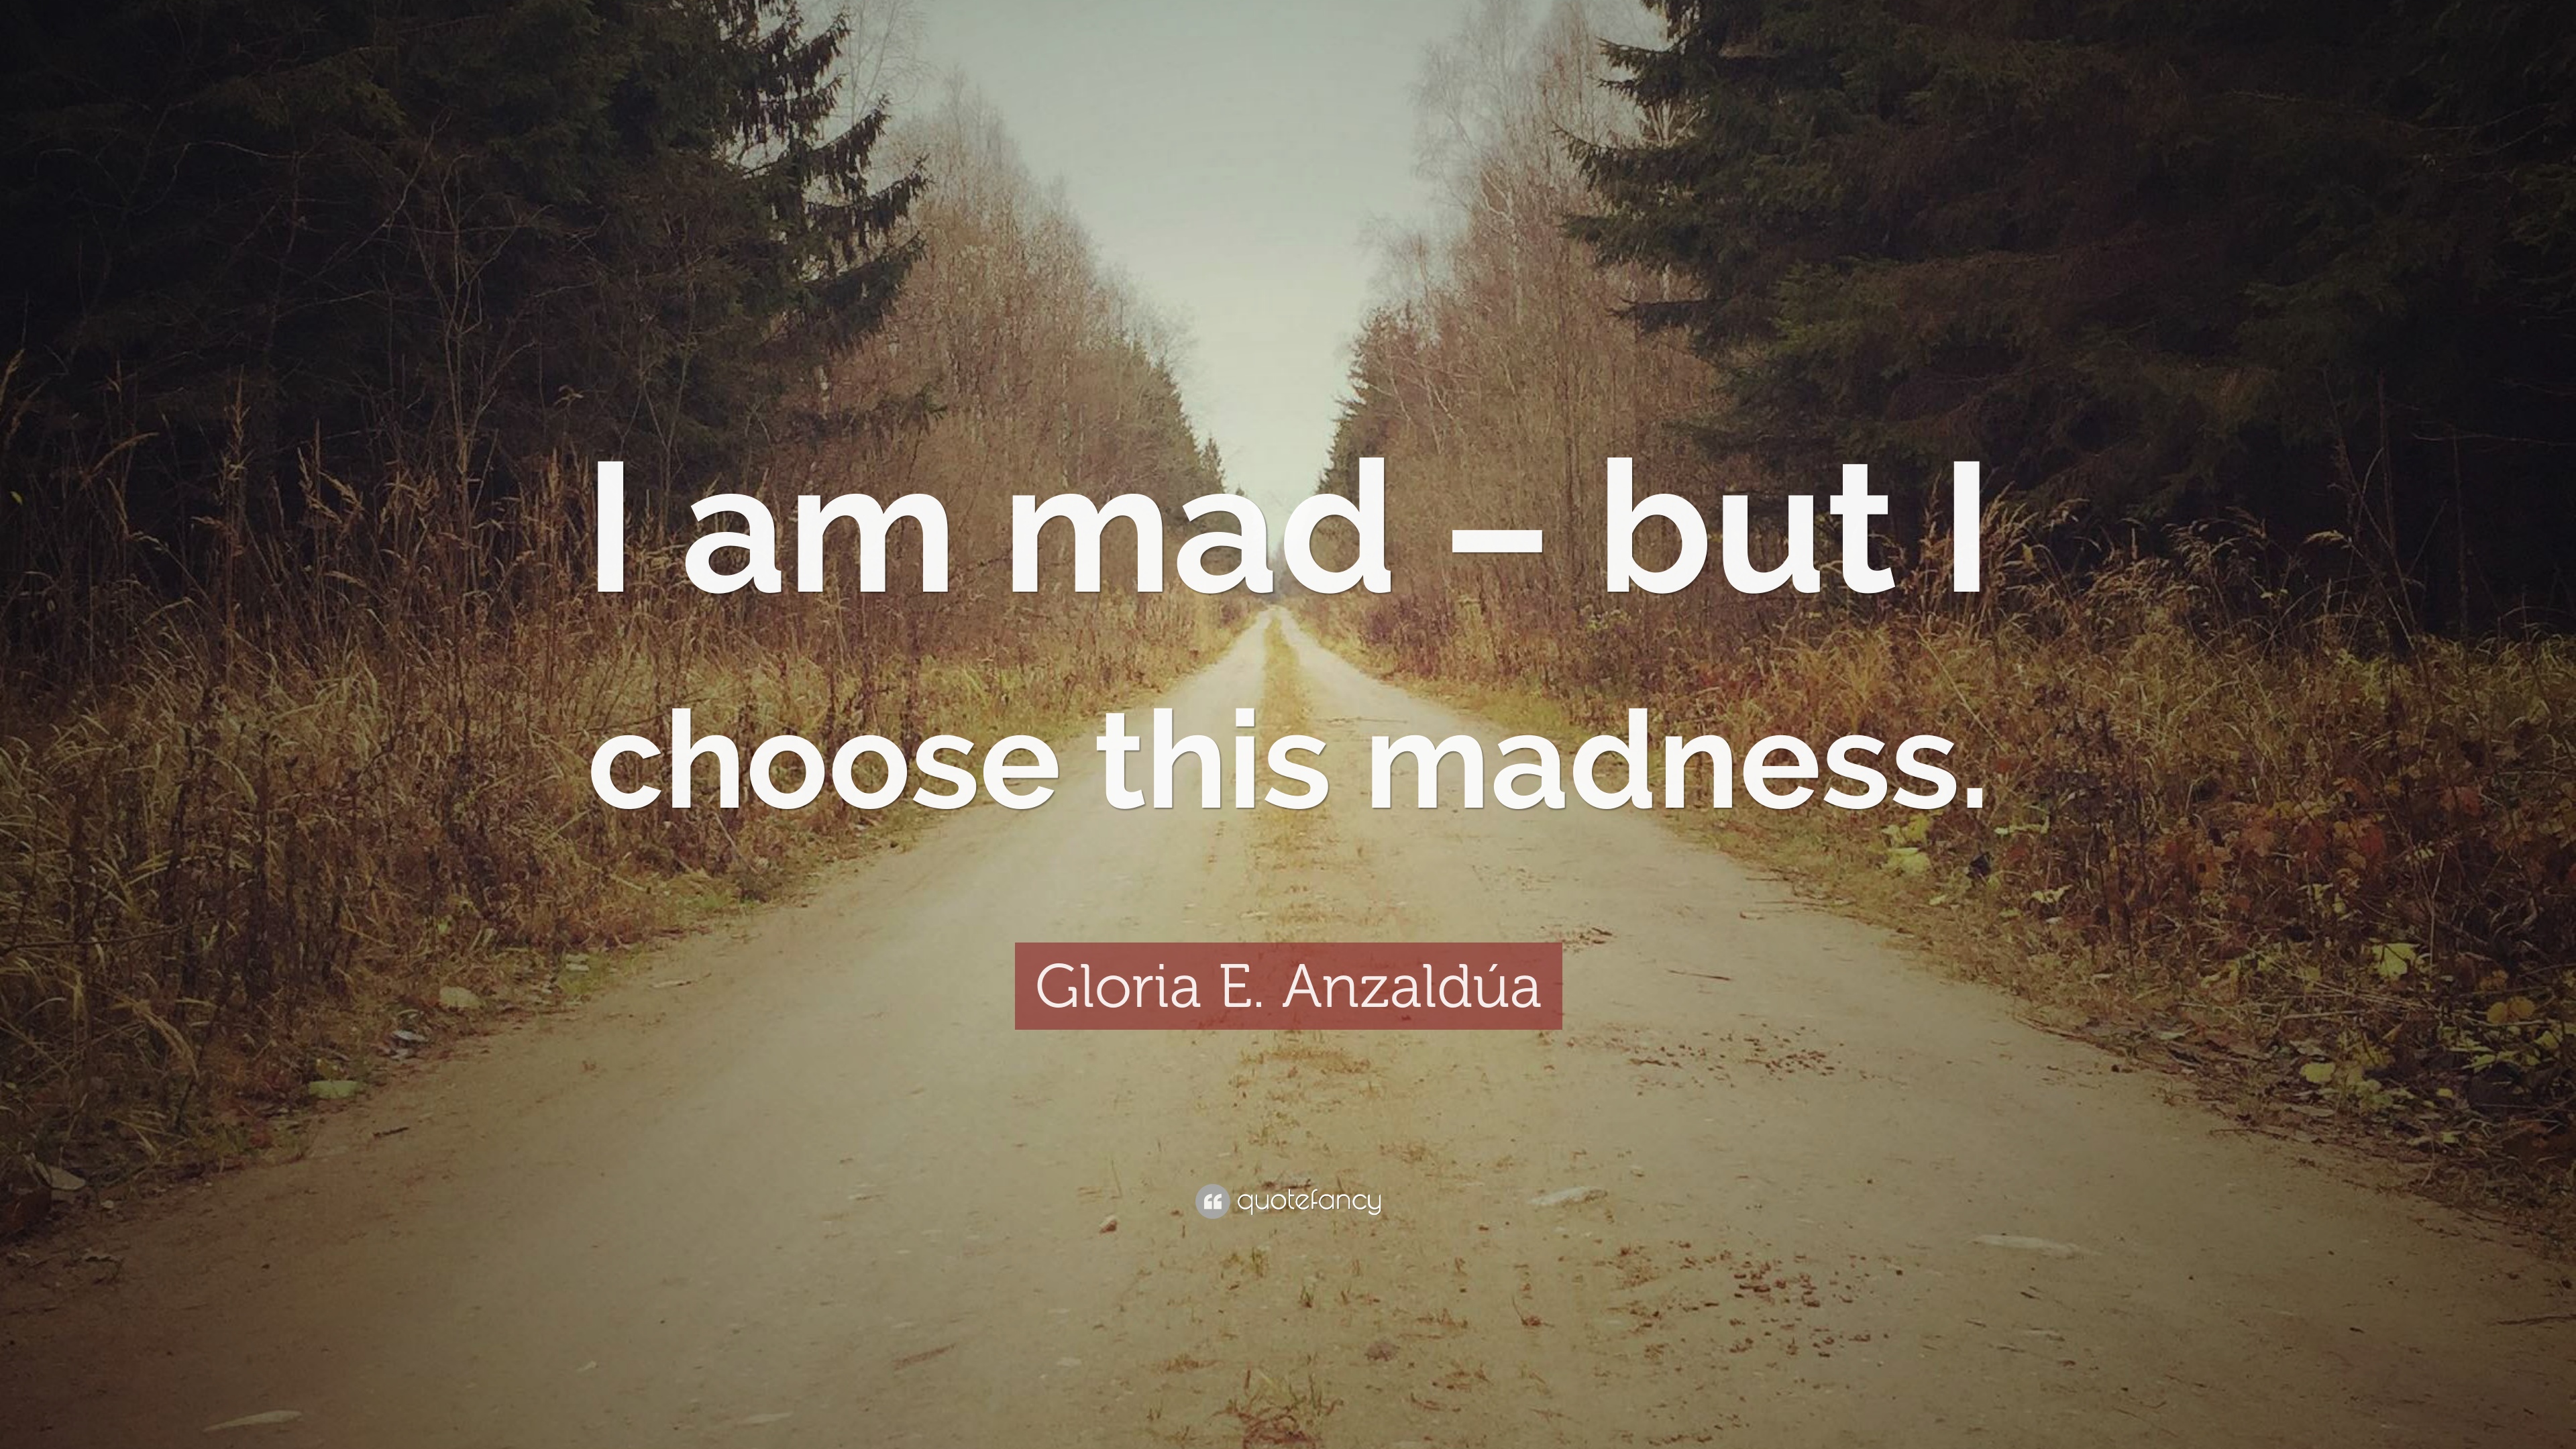 Gloria E. Anzaldúa Quote: “I am mad